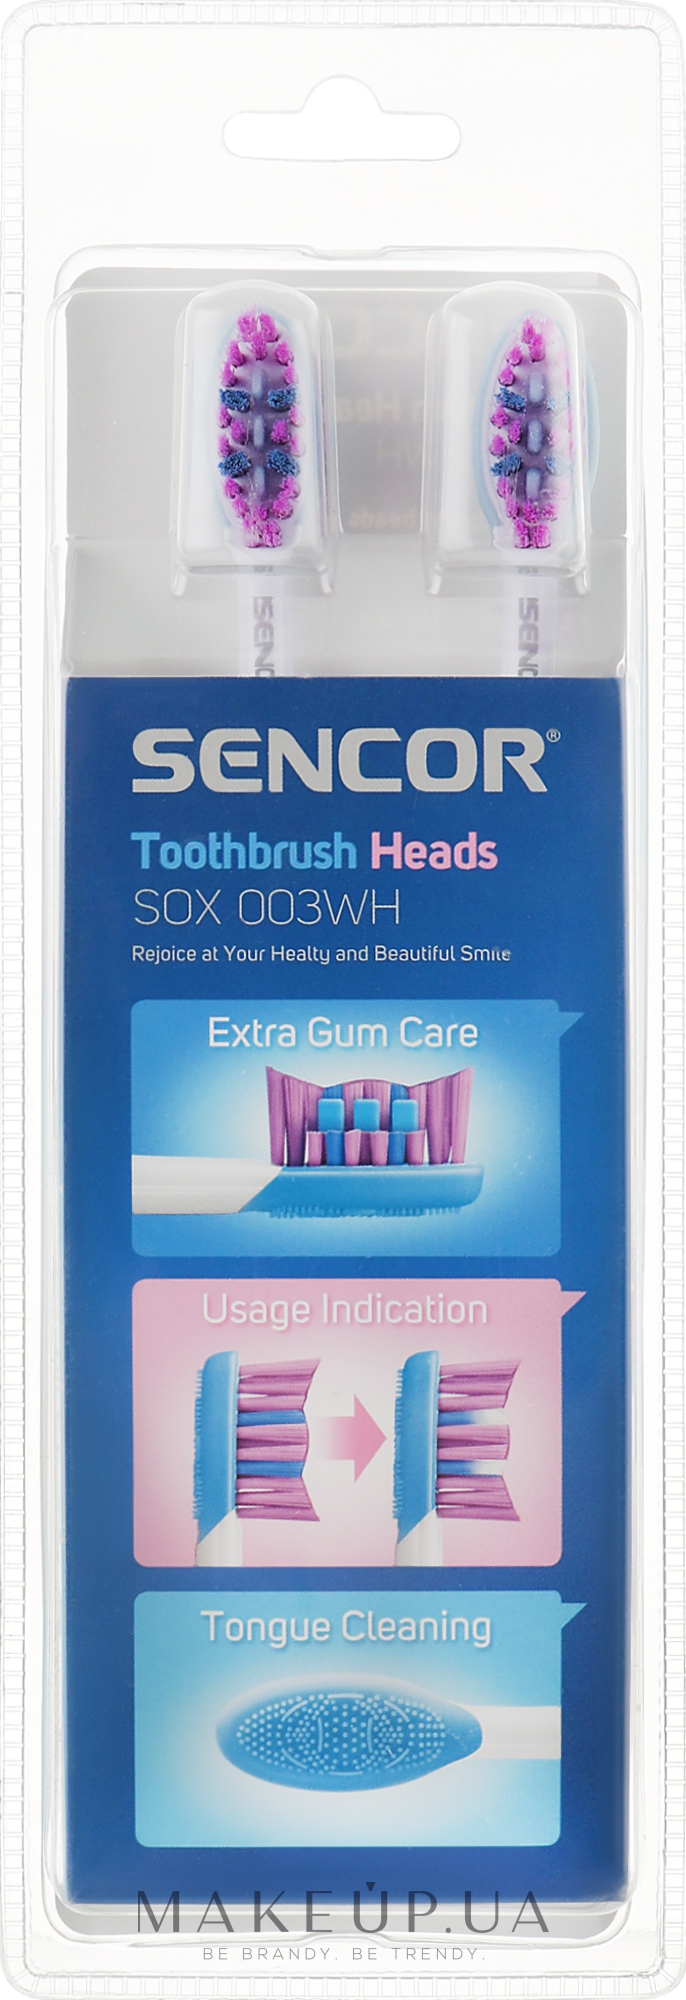 Насадка для электрической зубной щетки SOX003WH, 4 шт - Sencor — фото 4шт